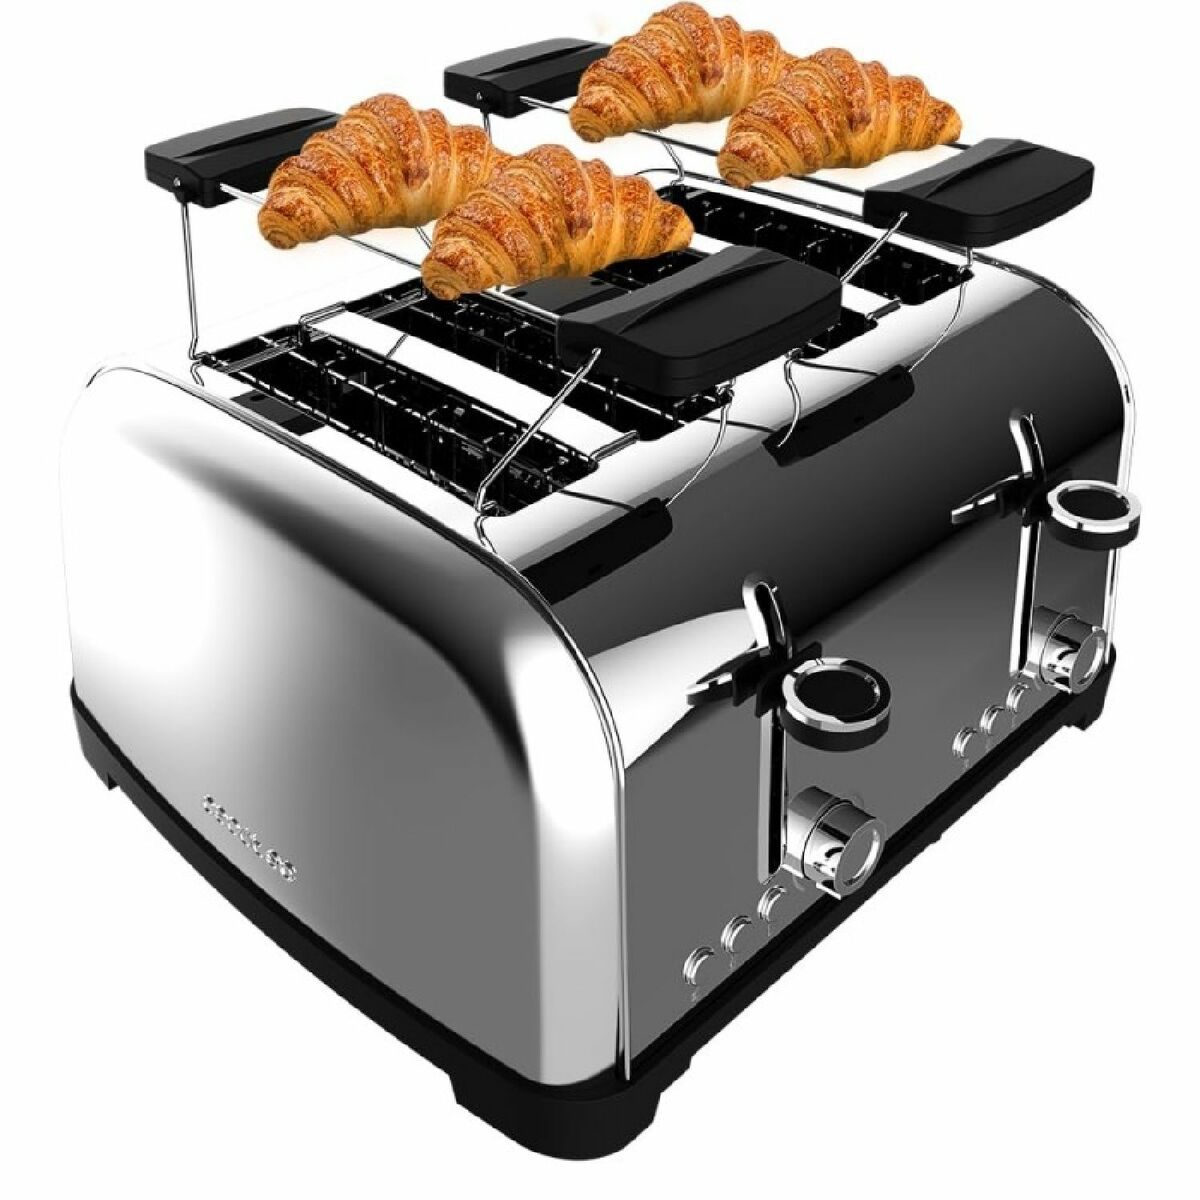 Kaufe Toaster Cecotec Toastin' time 1700 Double Inox 1700 W bei AWK Flagship um € 67.00